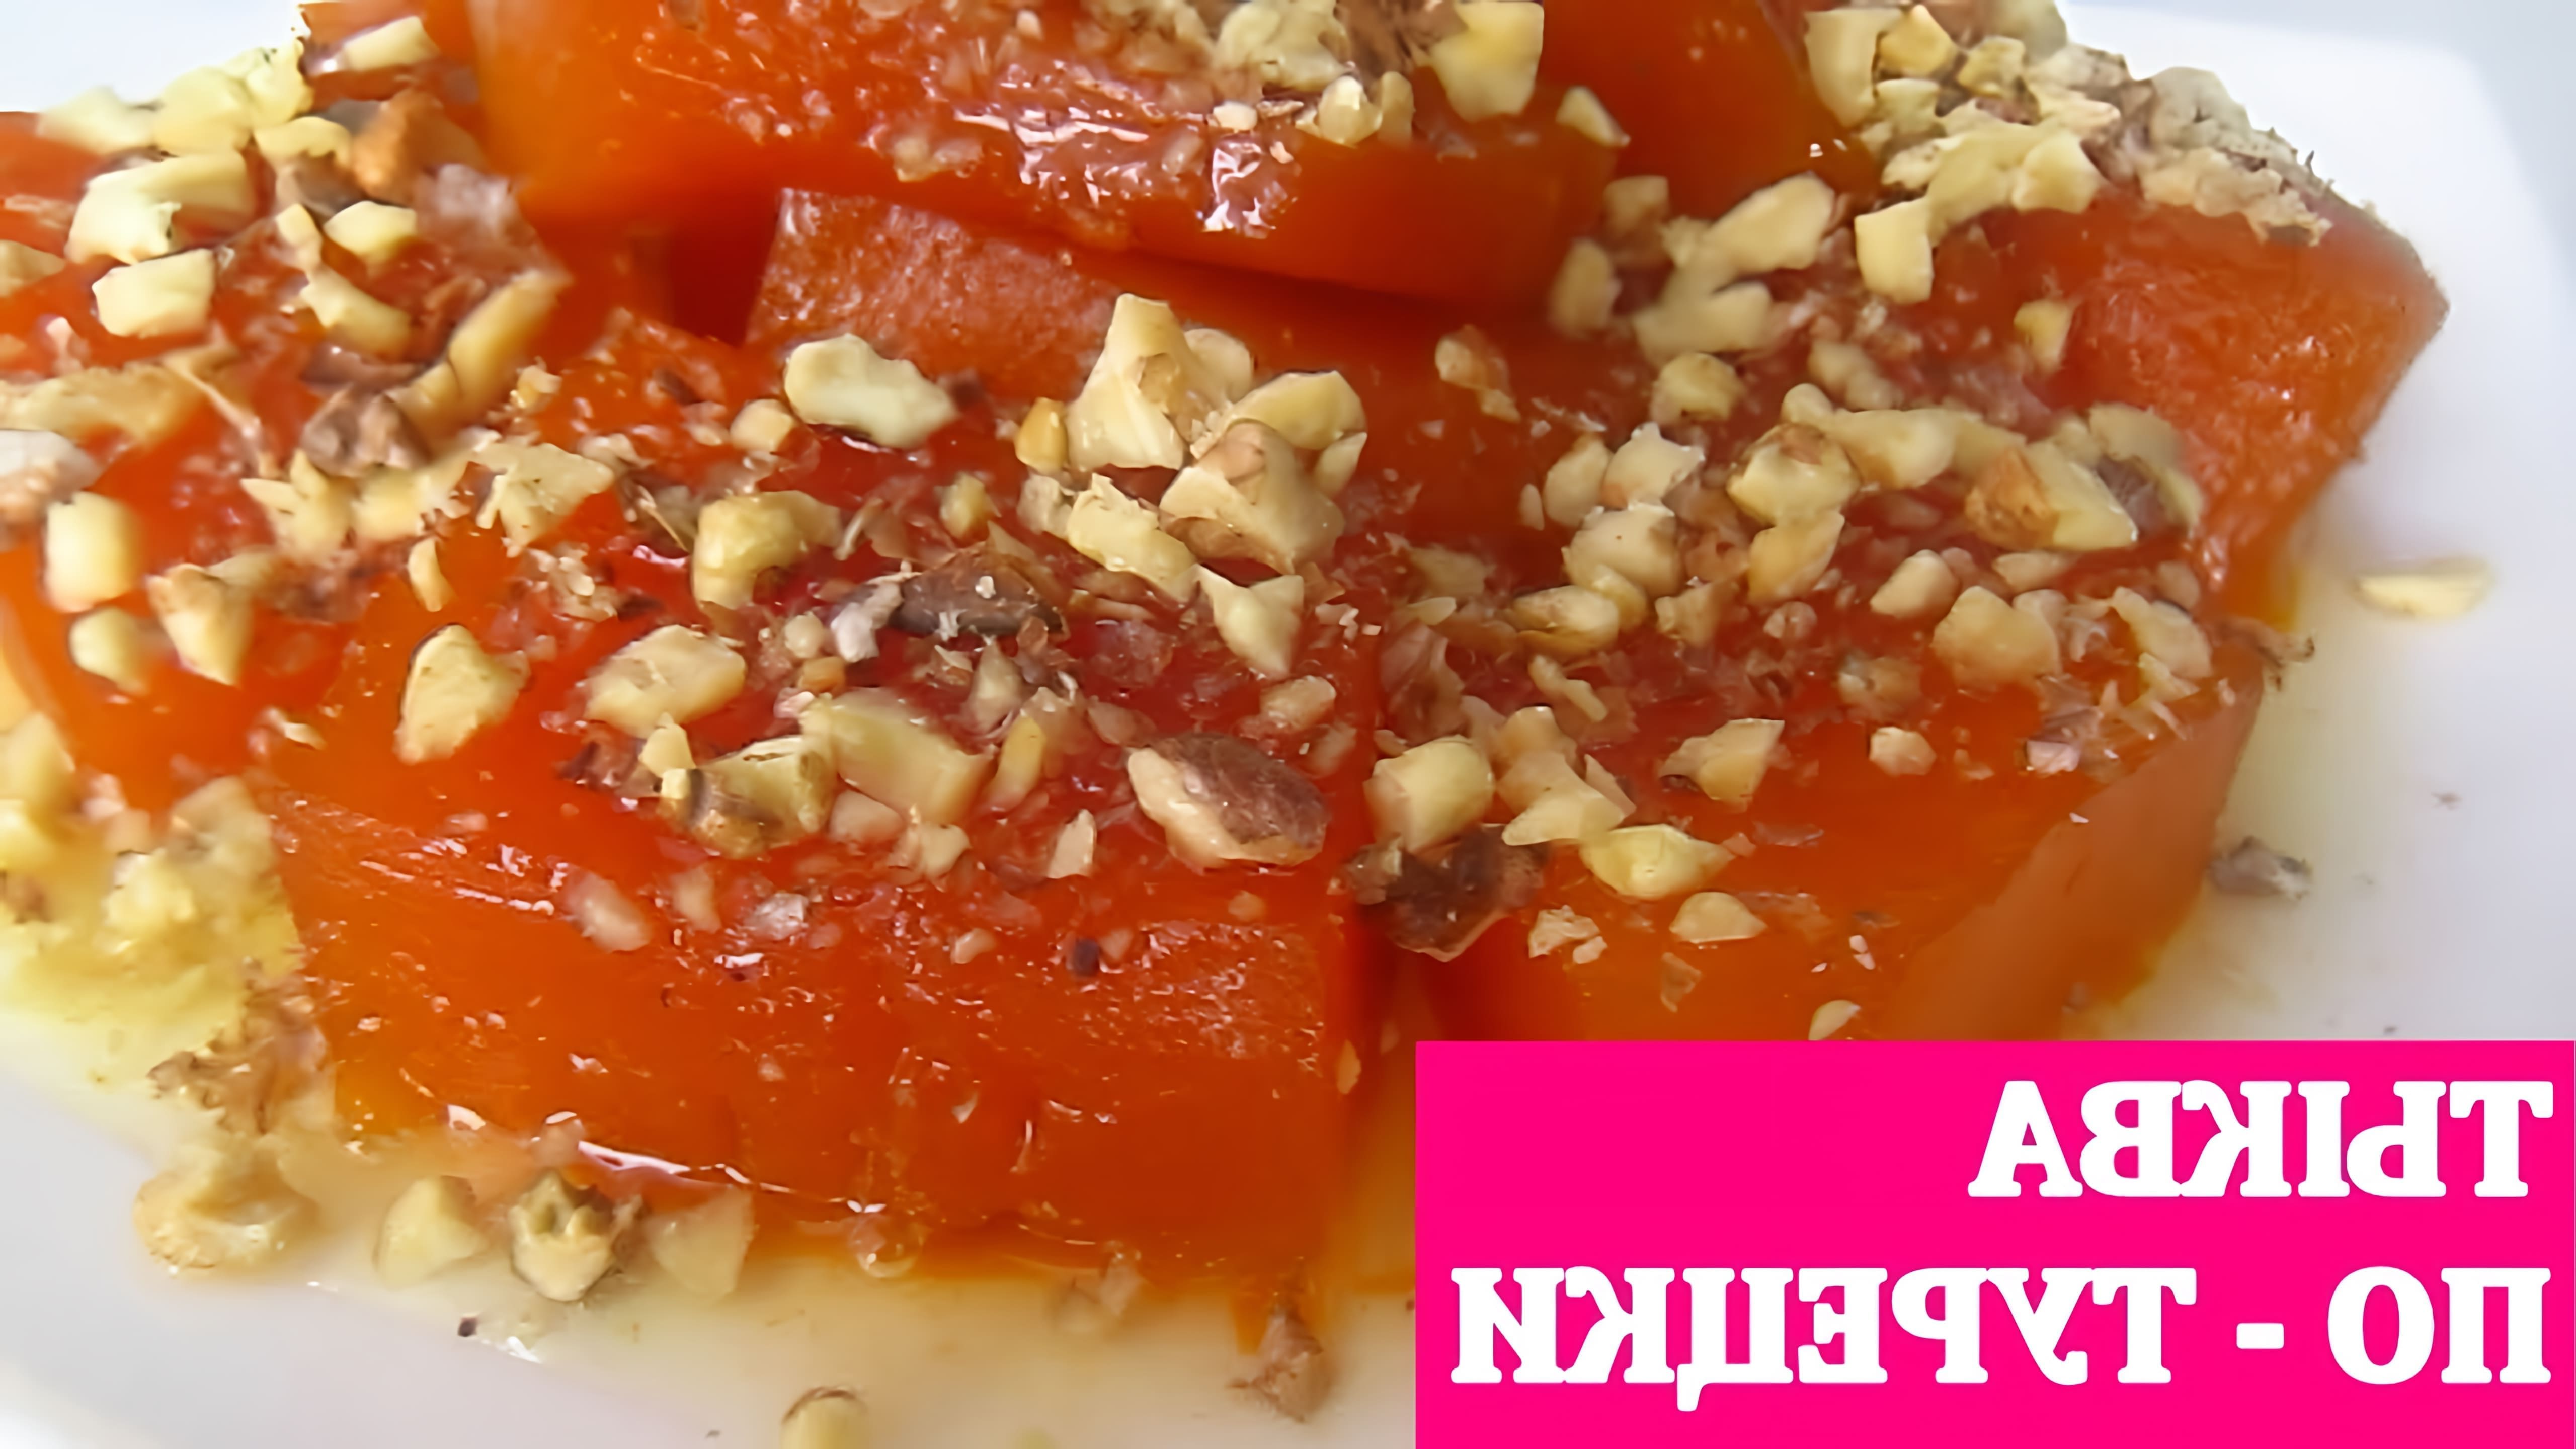 В этом видео демонстрируется процесс приготовления тыквы по-турецки, восточного десерта